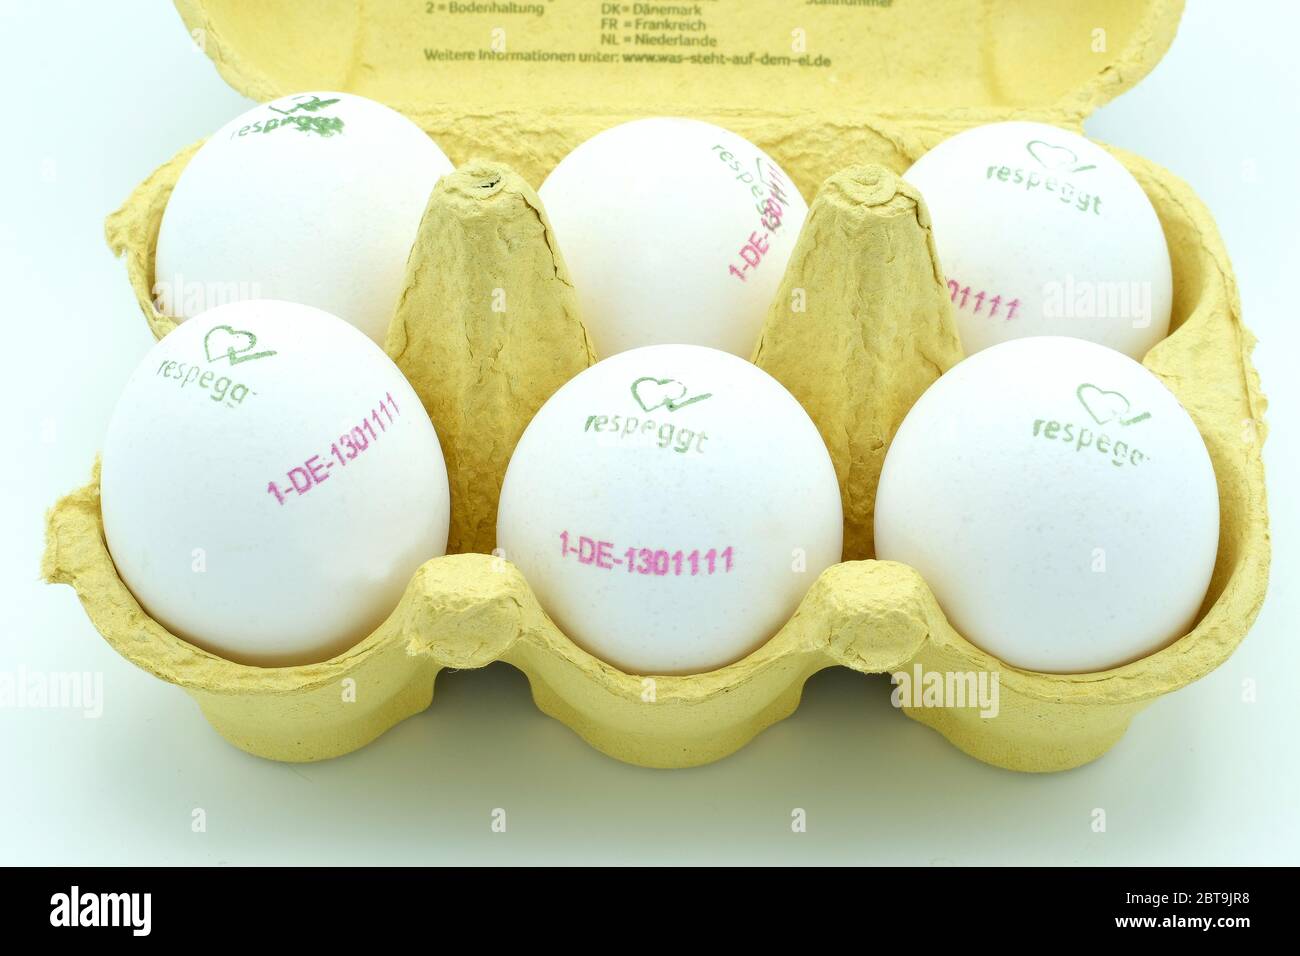 Primer plano de una caja de huevos llena de media docena de huevos blancos de gama libre marcados respeggt Foto de stock